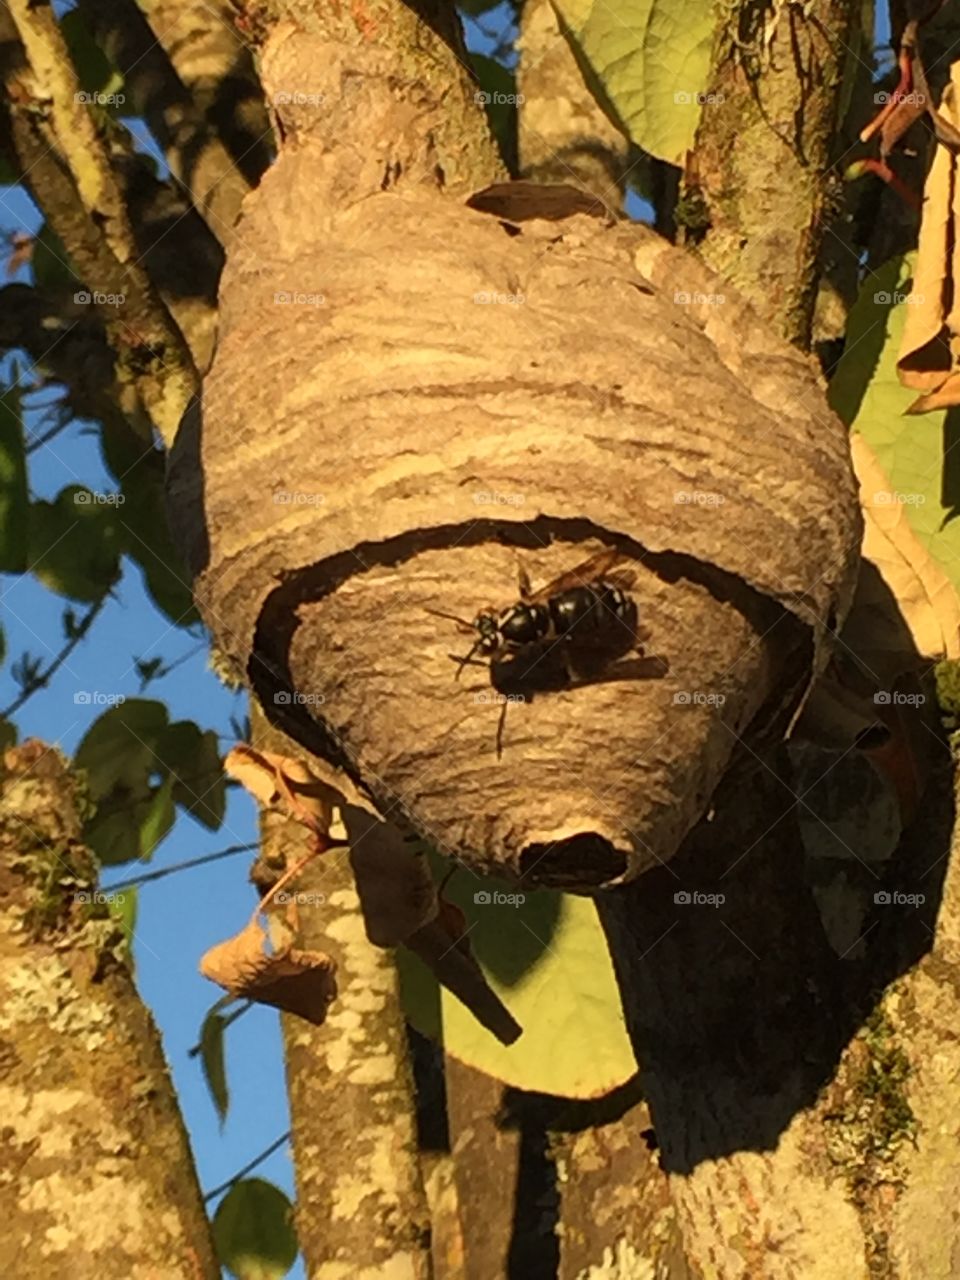 Hornet's nest